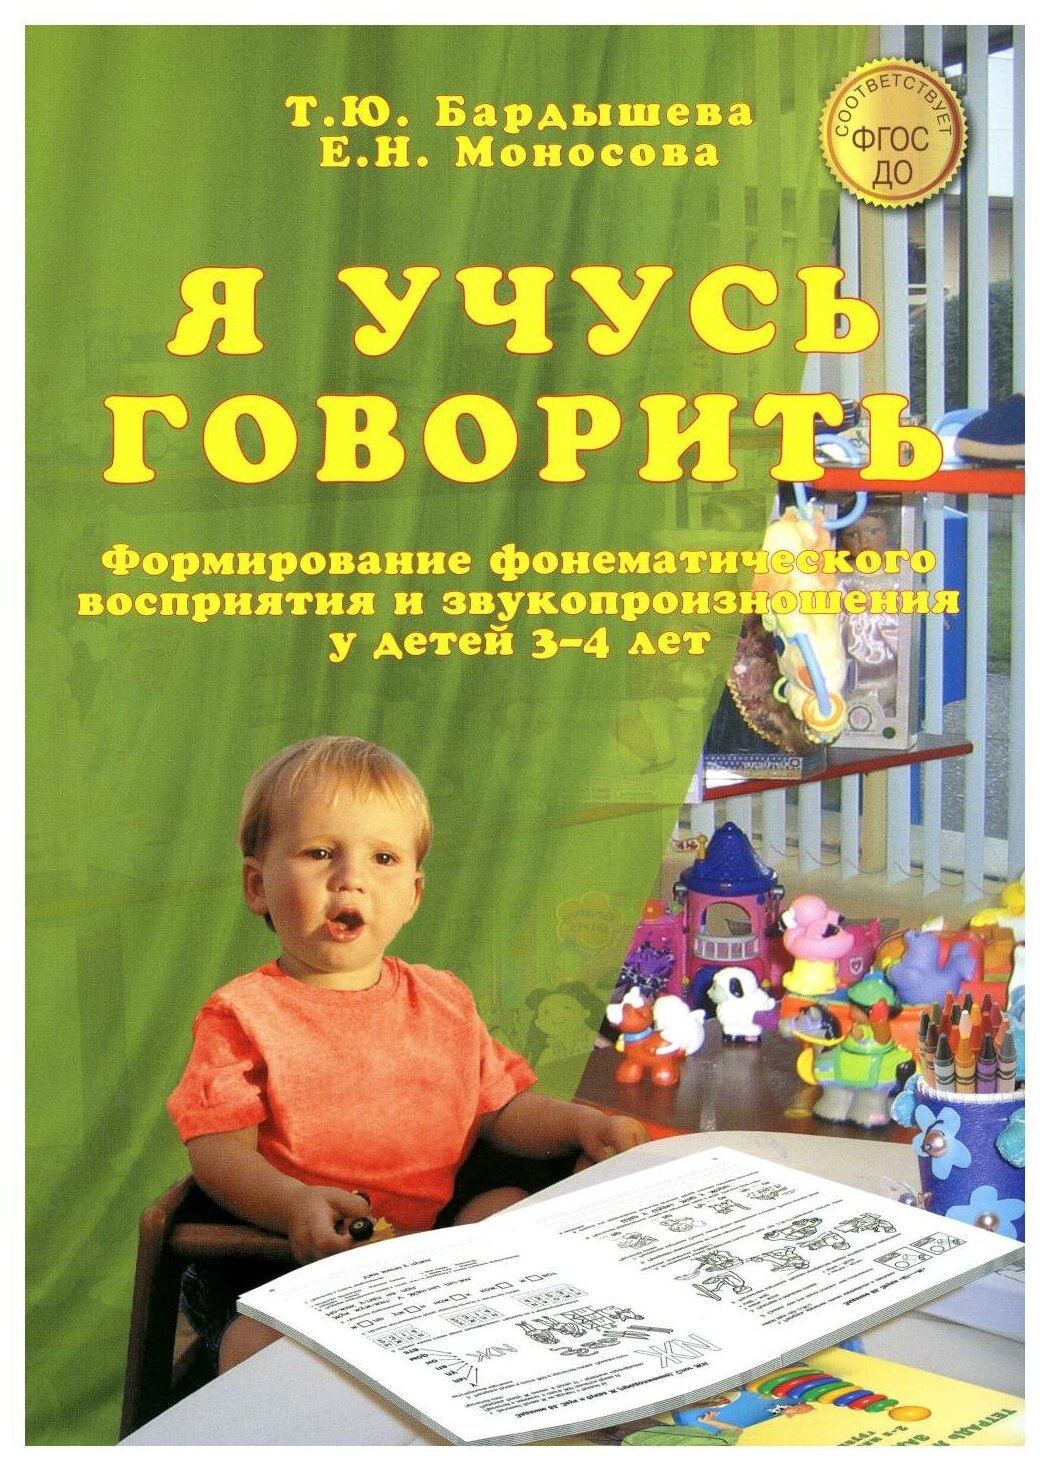 Я учусь говорить Формирование фонематического восприятия и звукопроизношения у детей 3-4 лет Пособие Бардышева ТЮ